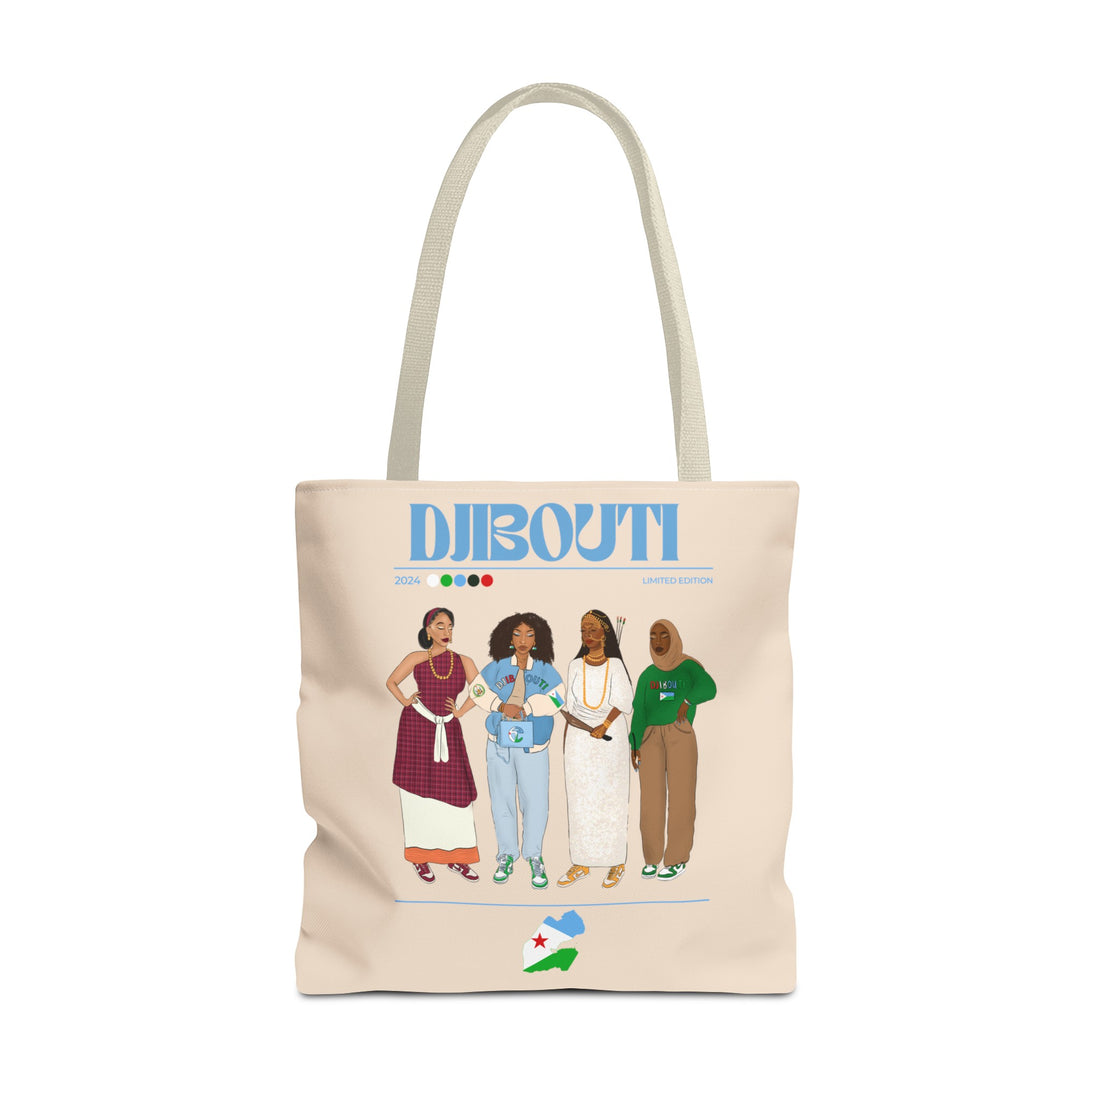 Djibouti x Streetwear Tote Bag